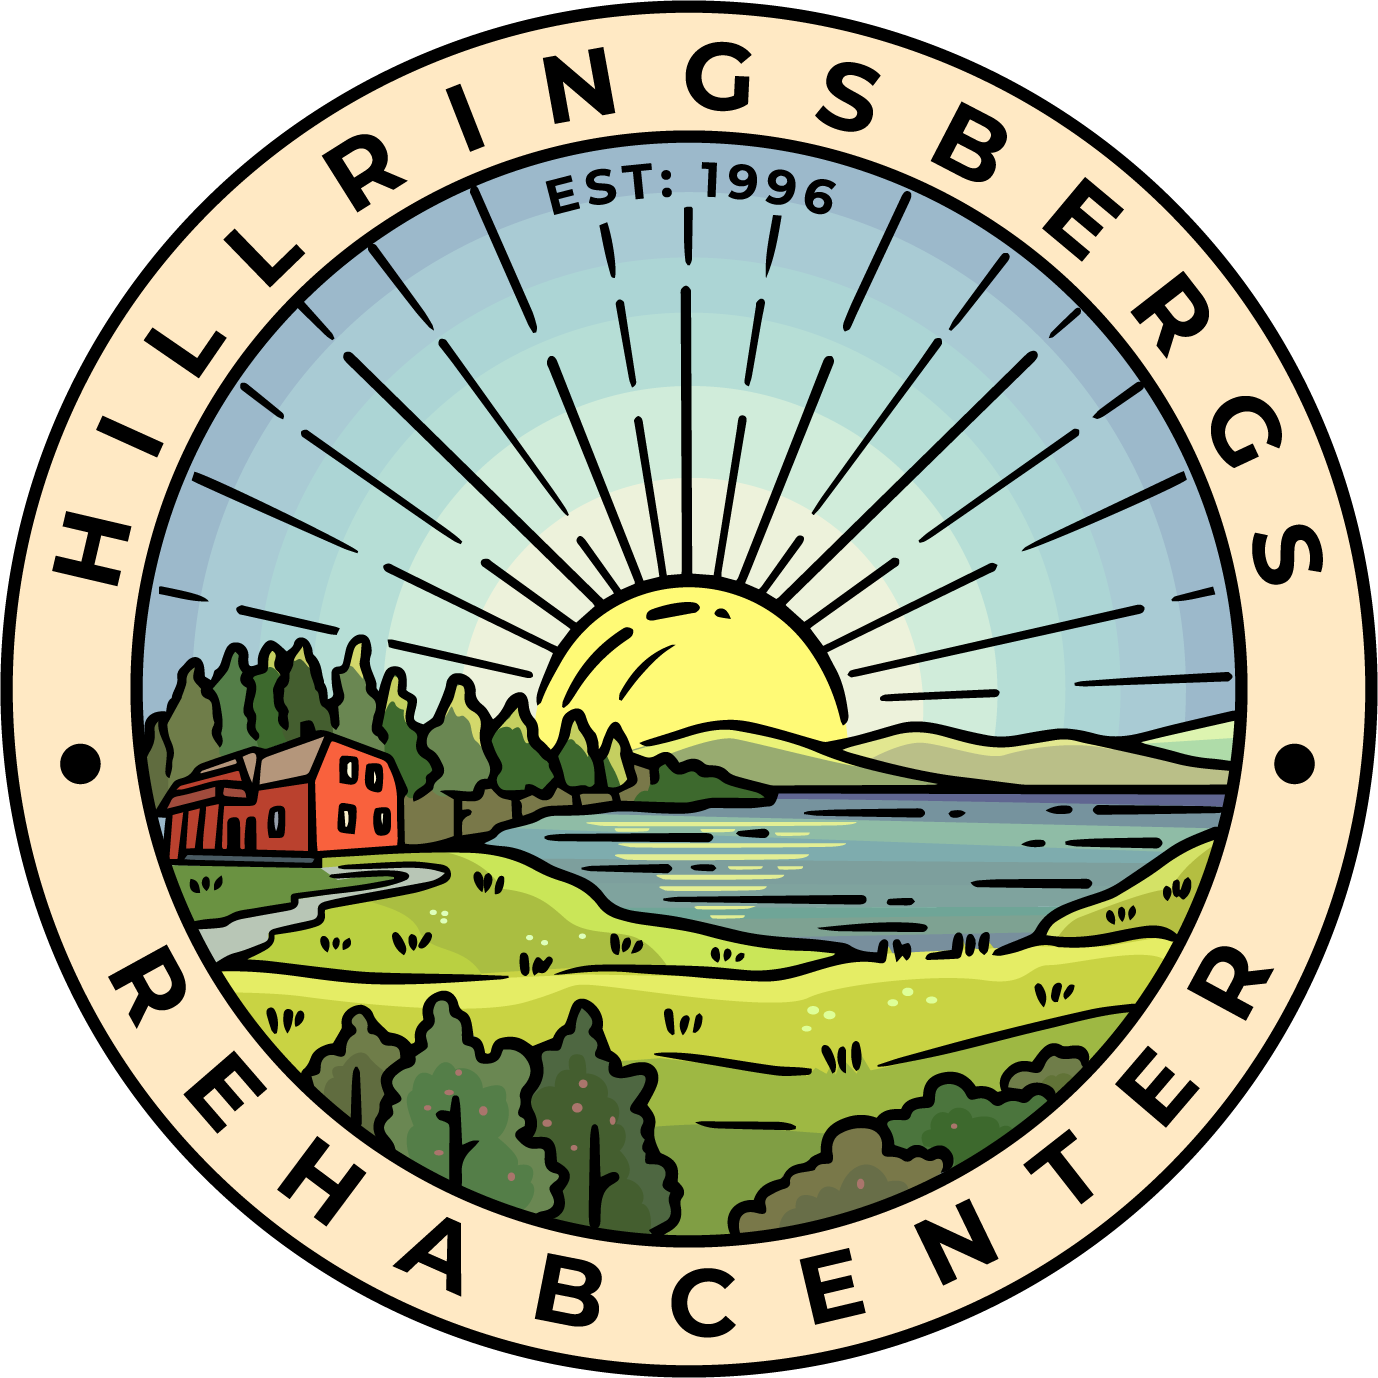 Hillringsbergs Rehabcenter